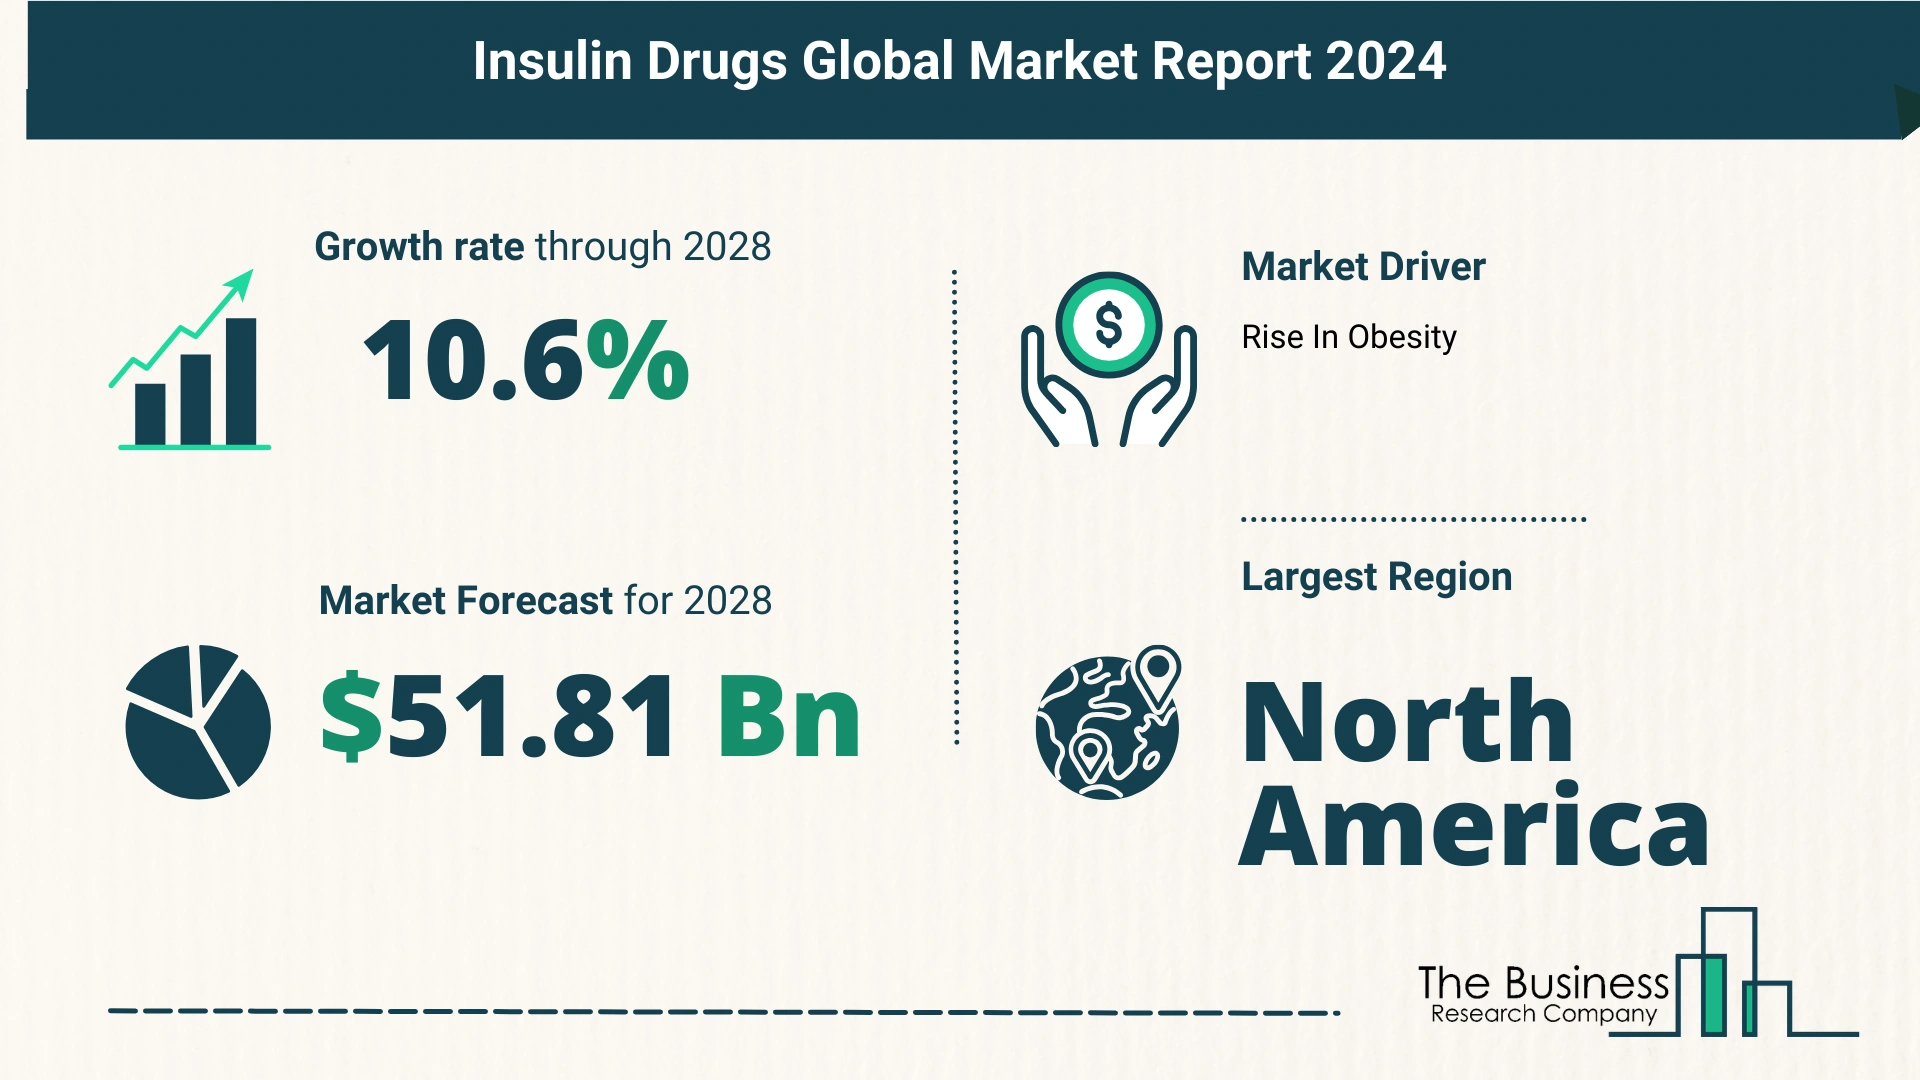 Global Insulin Drugs Market Size